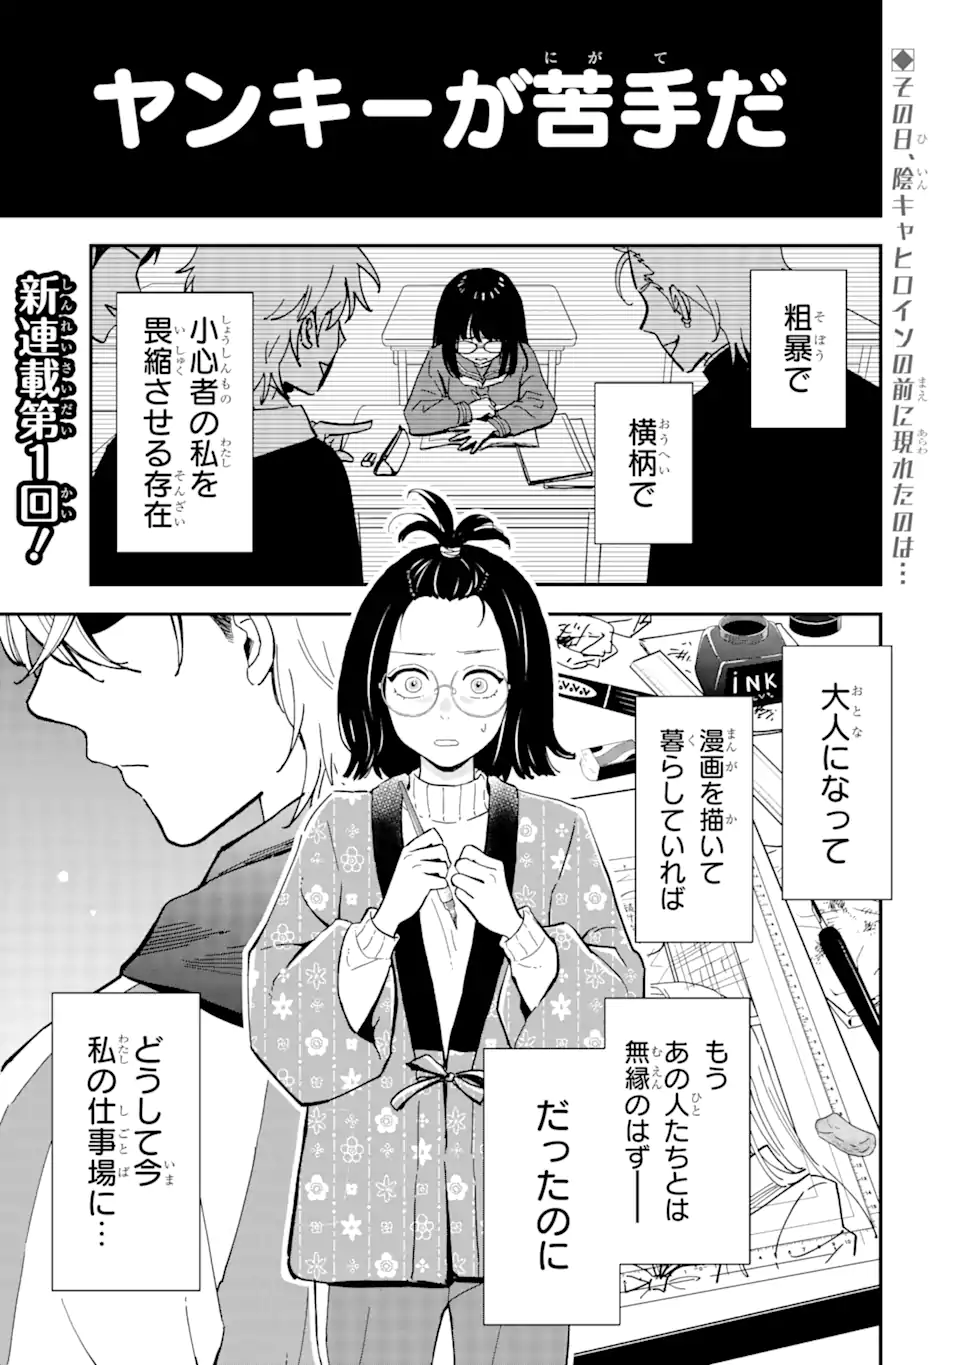 Yankee Assistant no Ashizawa-kun ni Koi wo shita - Chapter 1.1 - Page 1